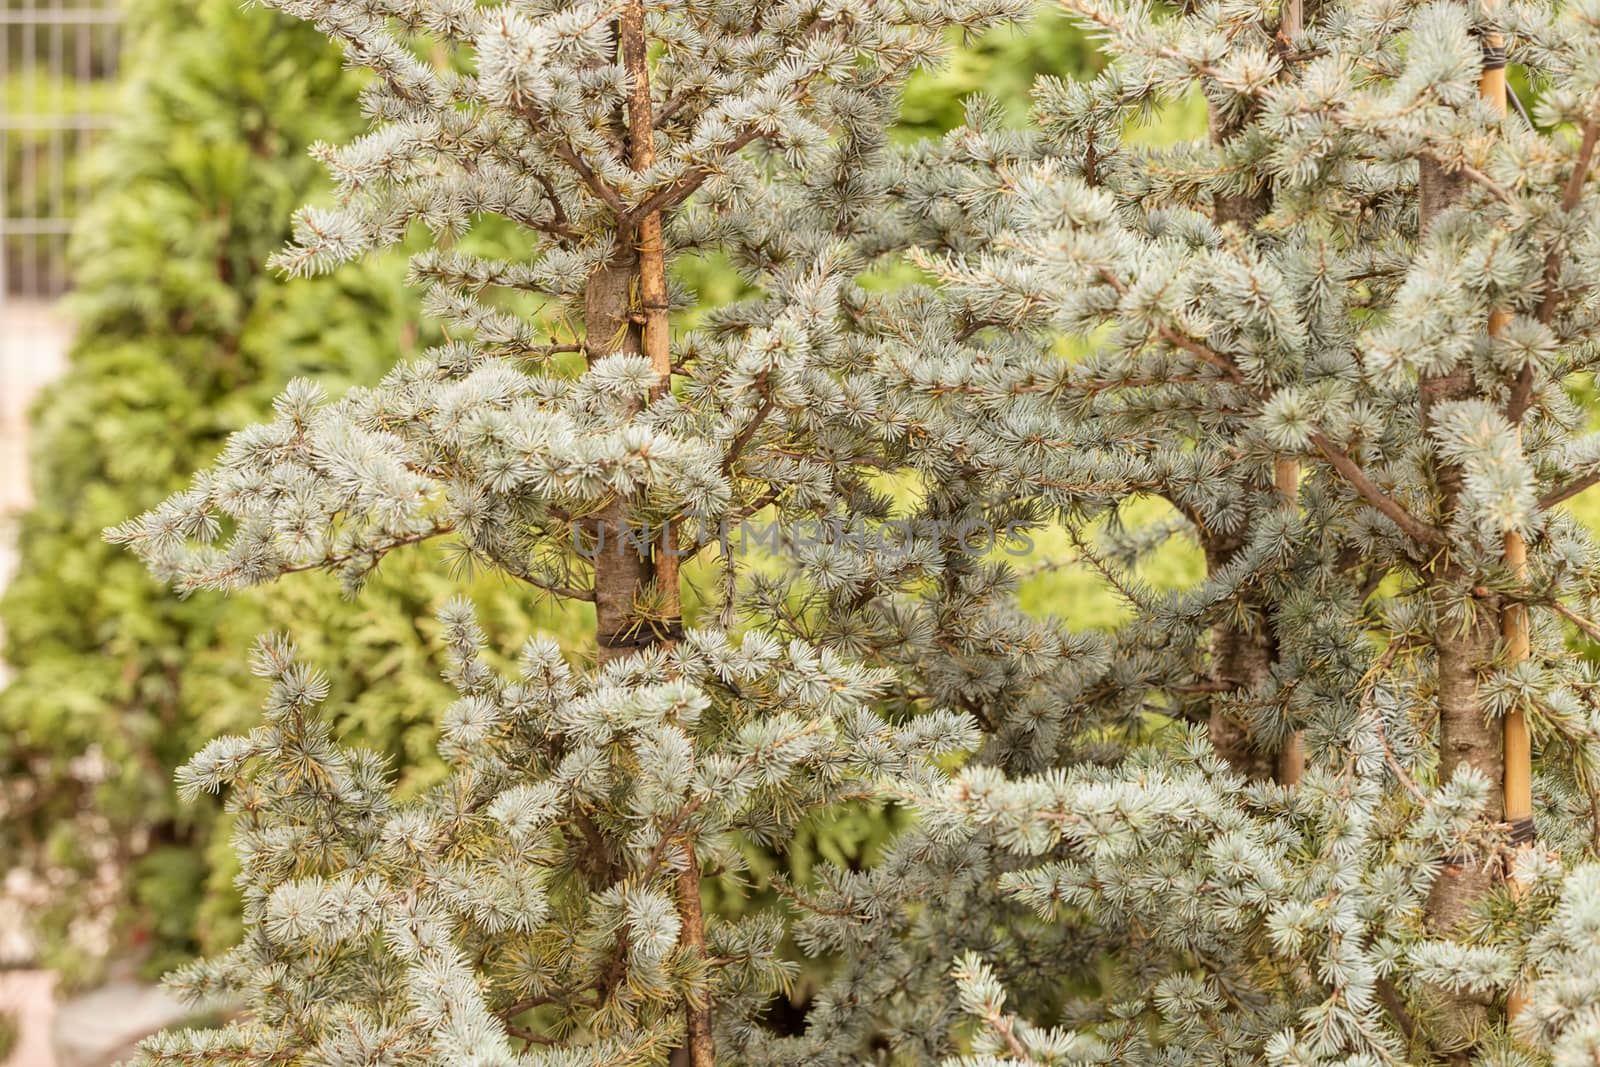 silver fir in a botanical garden, note shallow depth of field